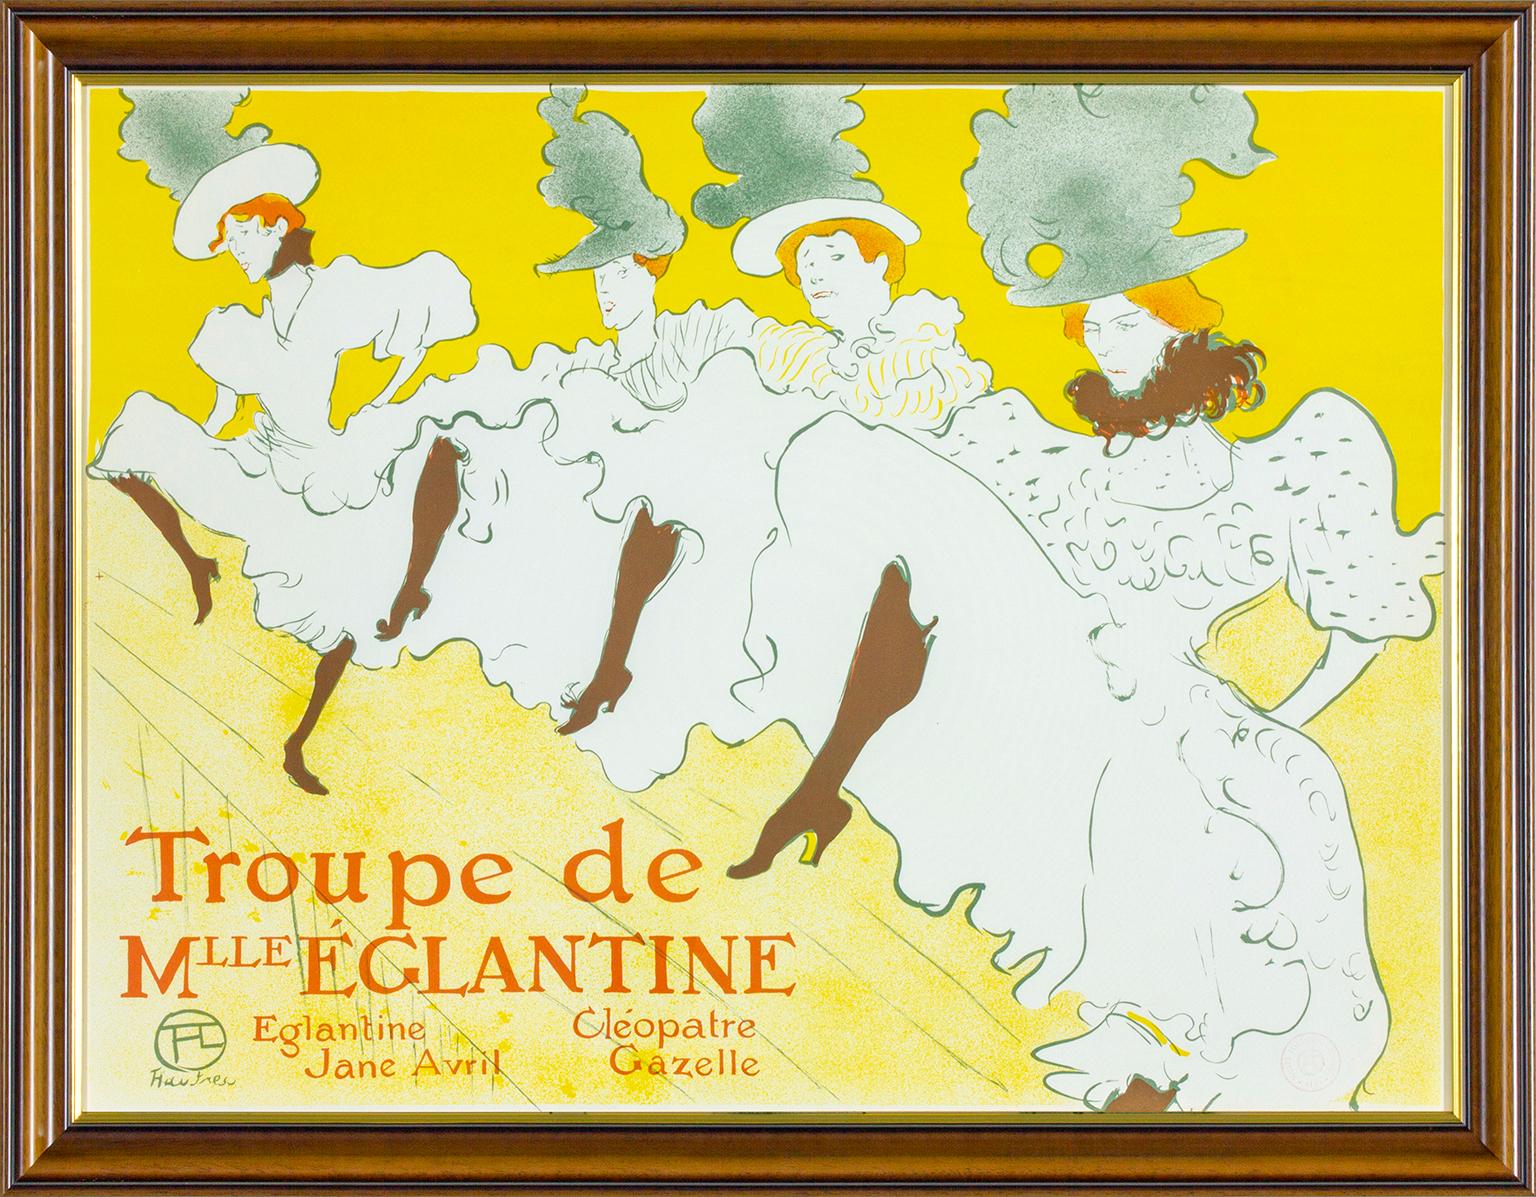 Henri de Toulouse-Lautrec Figurative Print – „Troupe de M'lle Eglantine“ Plakat in limitierter Auflage, Albi Museum, 1974